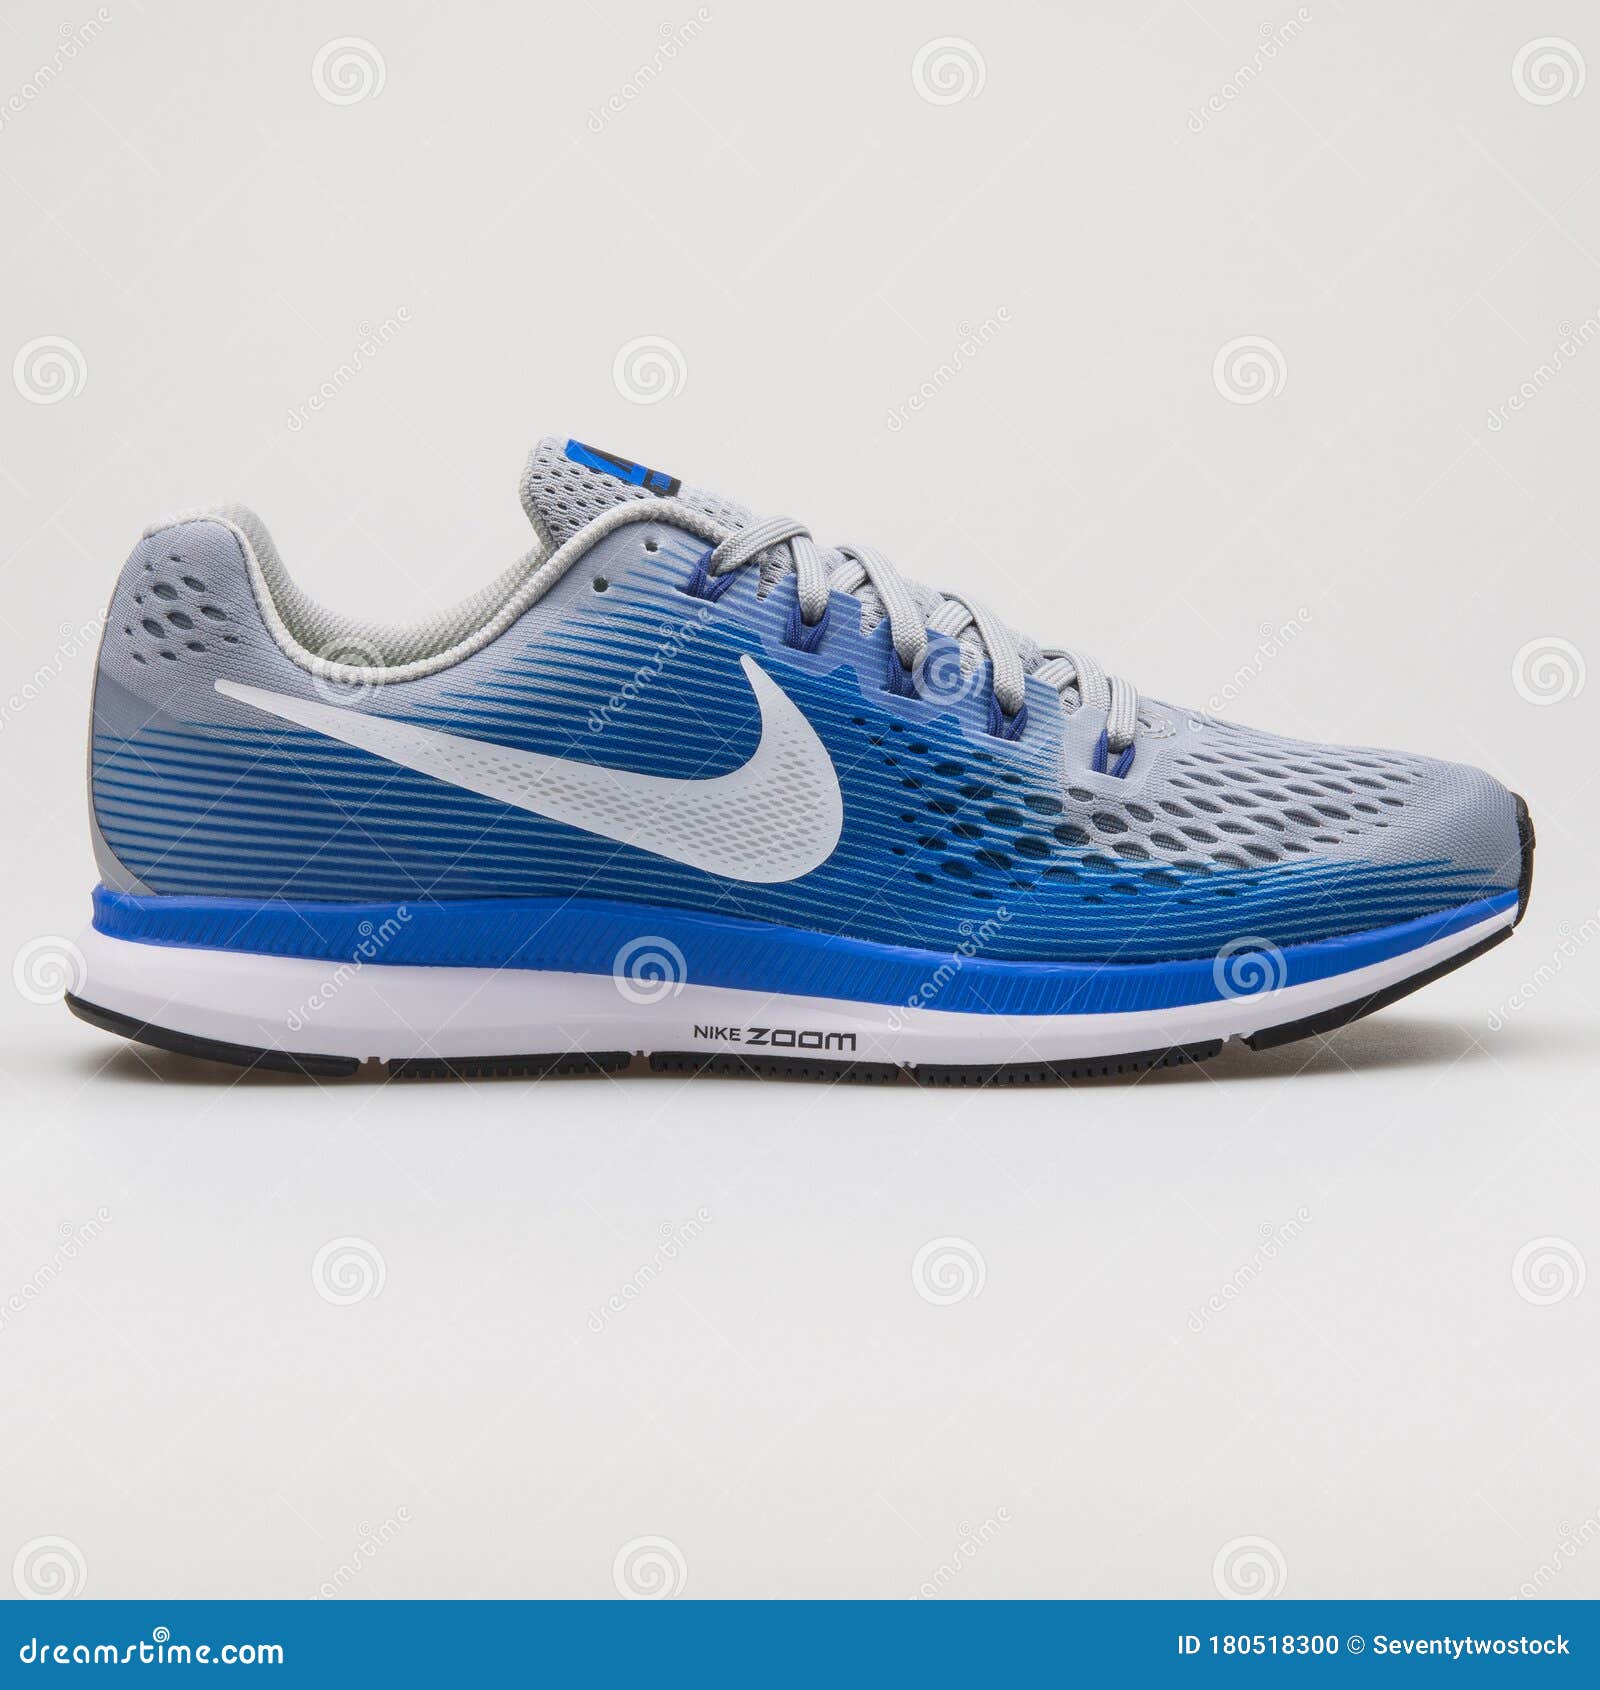 Zoom De Aire Nike Pegasus 34 Zapatillas Azul Y Gris editorial - Imagen de aislado, 180518300